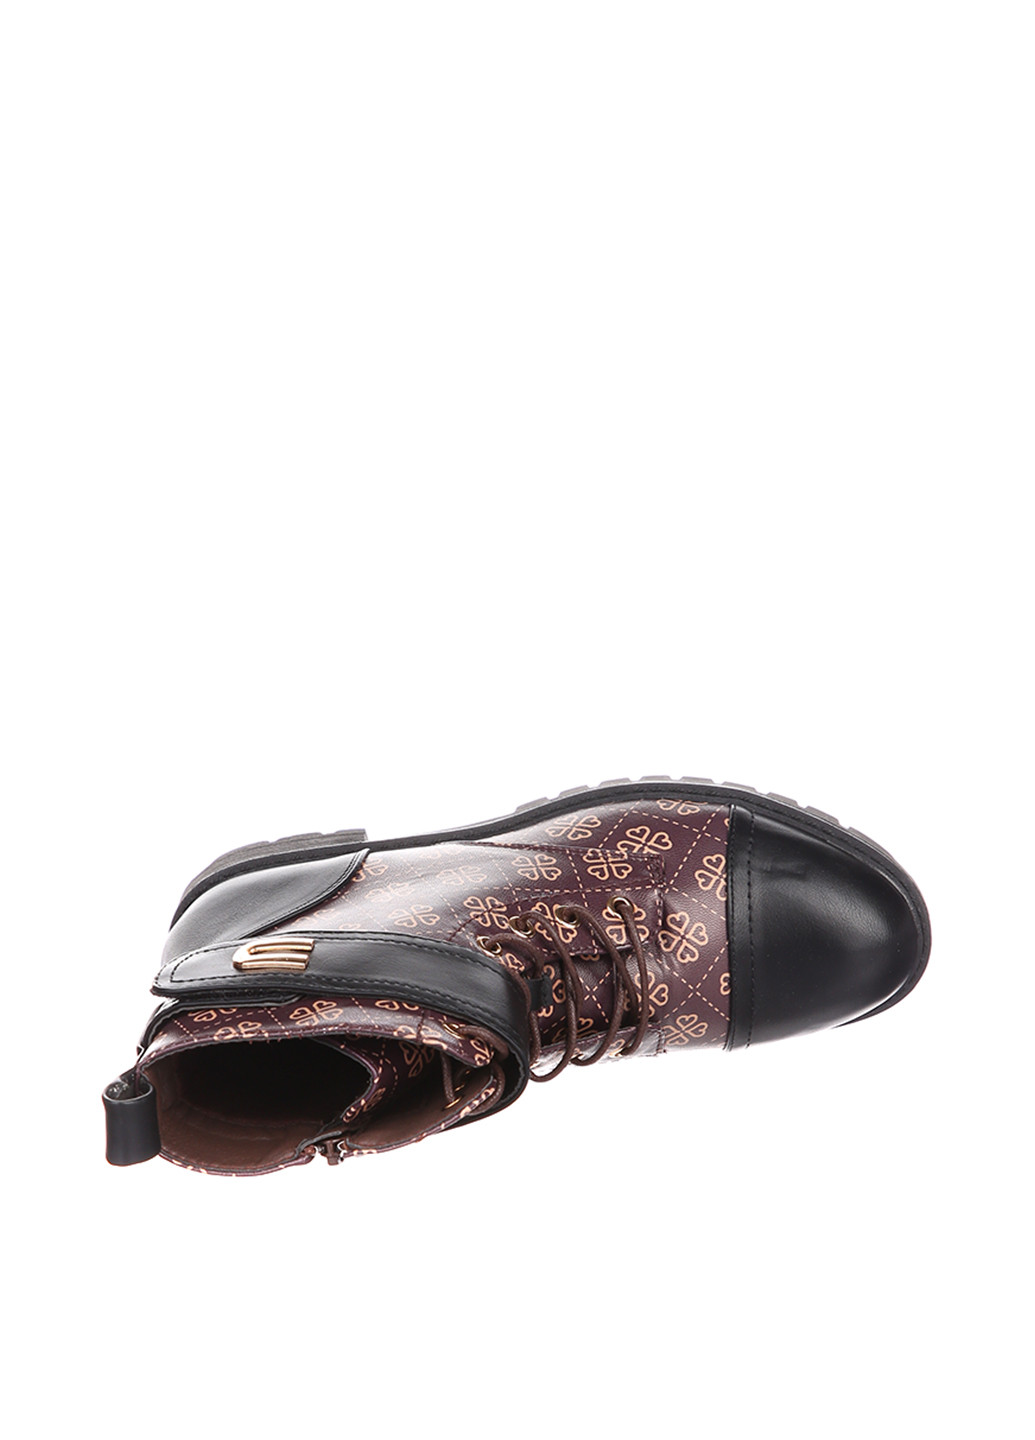 Осенние ботинки Goodin с пряжкой, со шнуровкой из искусственной кожи